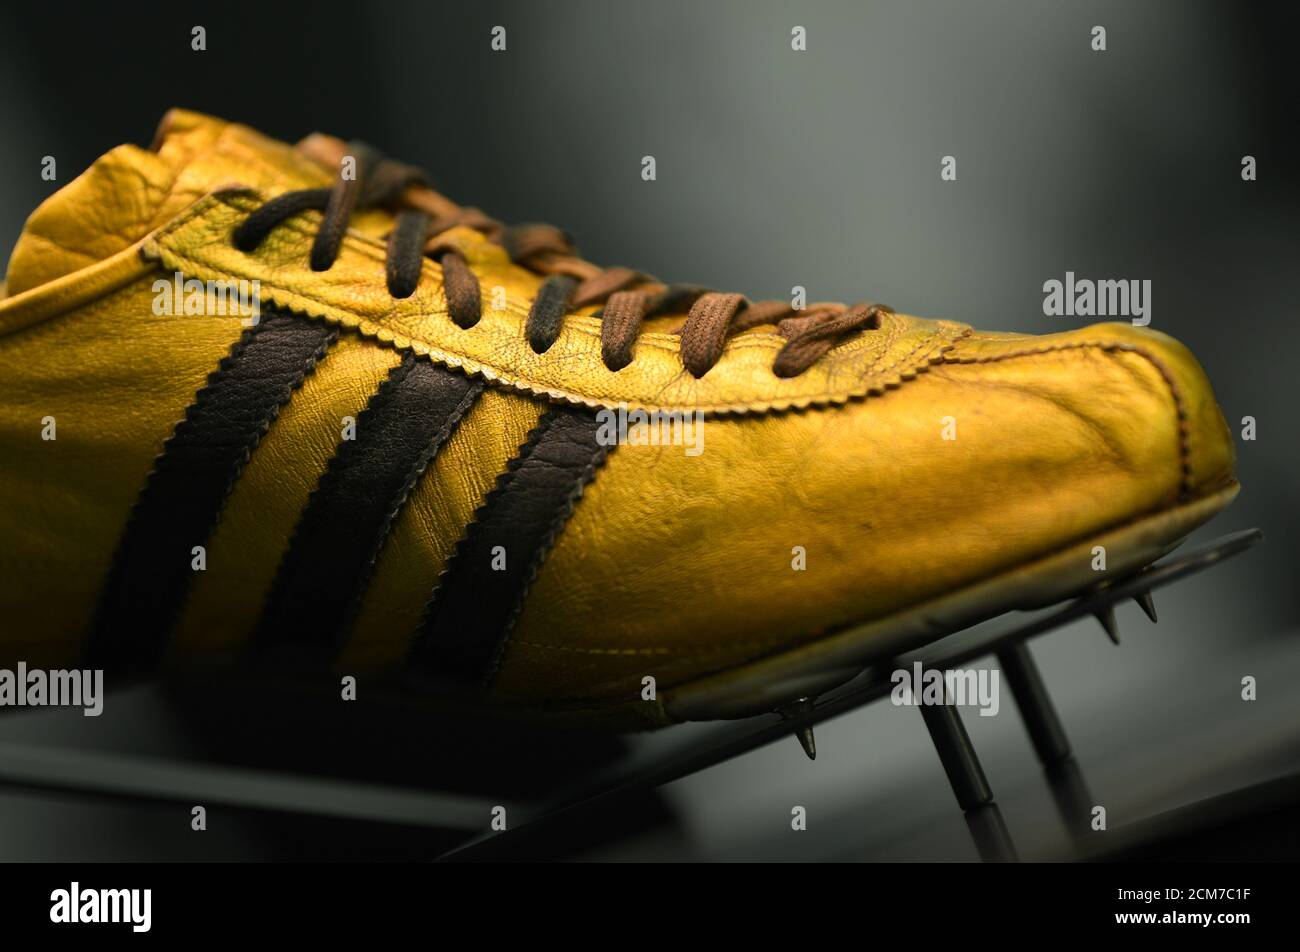 El zapato Adidas Azteca Gold 1968 se durante las celebraciones del 70º aniversario del fabricante alemán de ropa deportiva Adidas en la exposición de historia de la compañía en Herzogenaurach, Alemania,